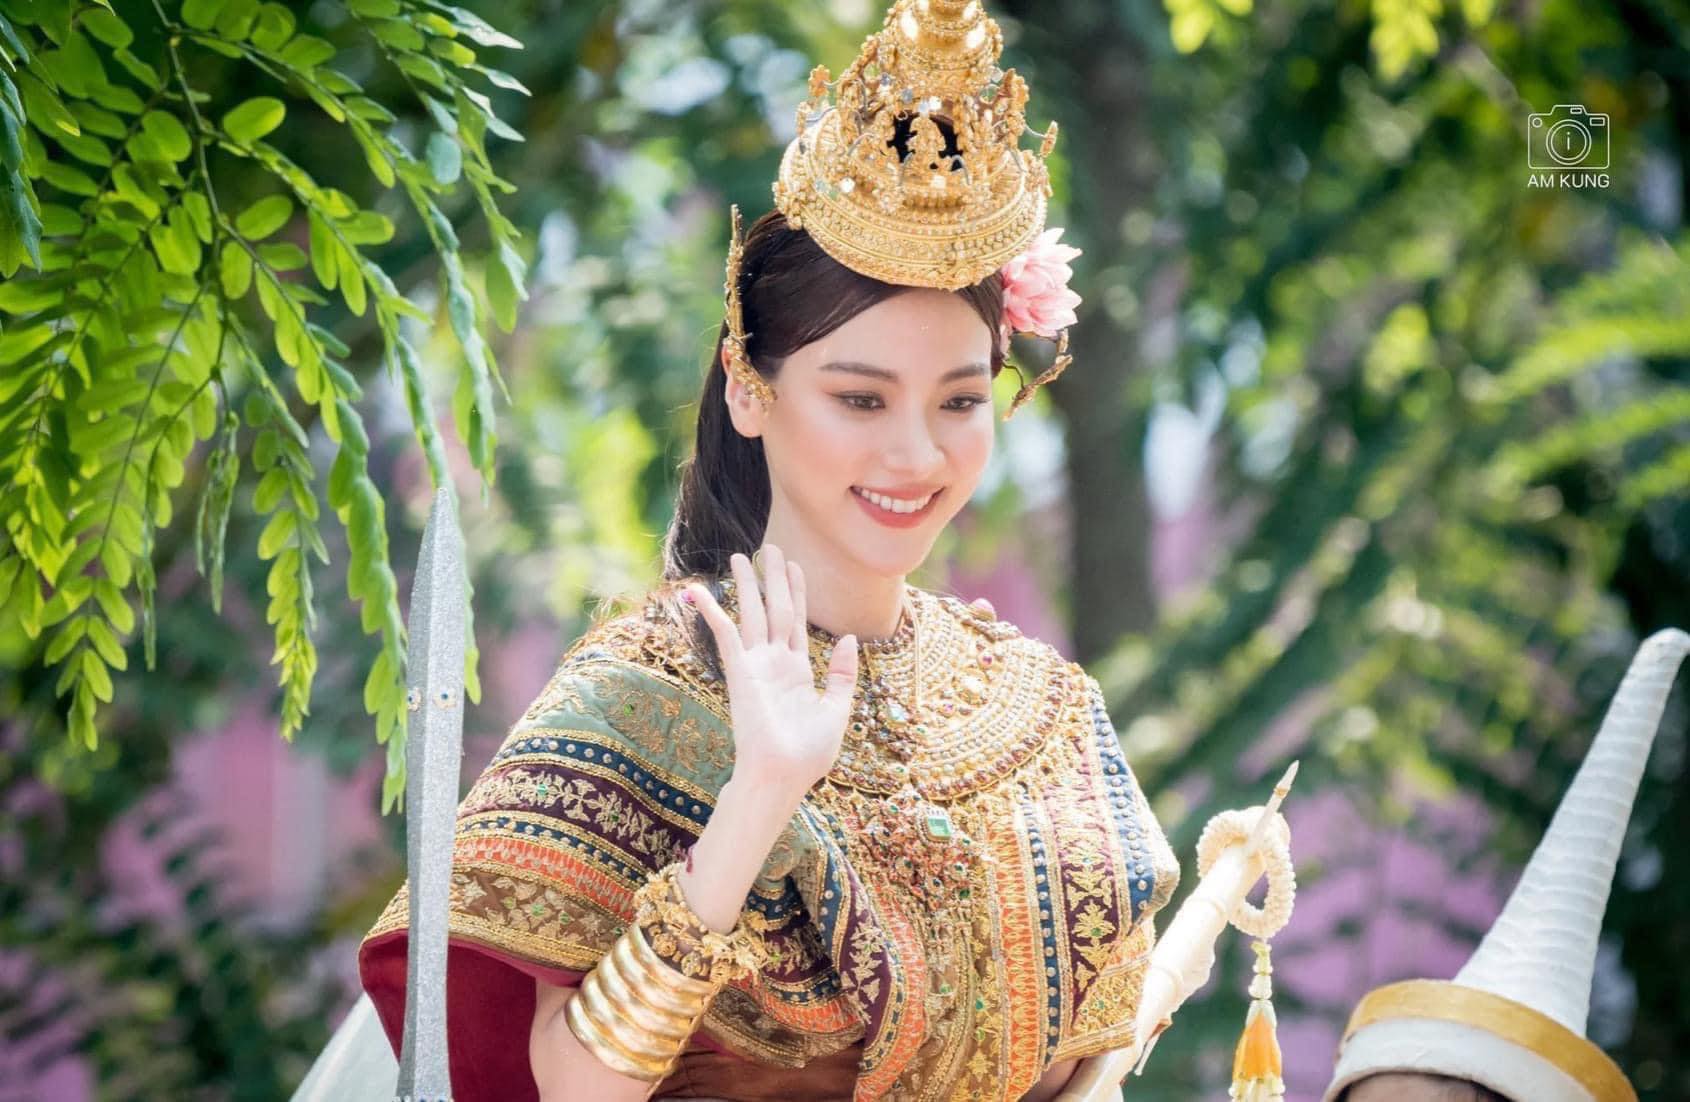 Năm 2023, Baifern Pimchanok tiếp tục hóa thân thành "nữ thần Kimita Devi" (đại diện cho ngày thứ 6). Cô mặc quần áo dát vàng được trang trí ngọc lục bảo, tay trái cầm một thanh kiếm, tay phải là cây đàn và cưỡi trâu.